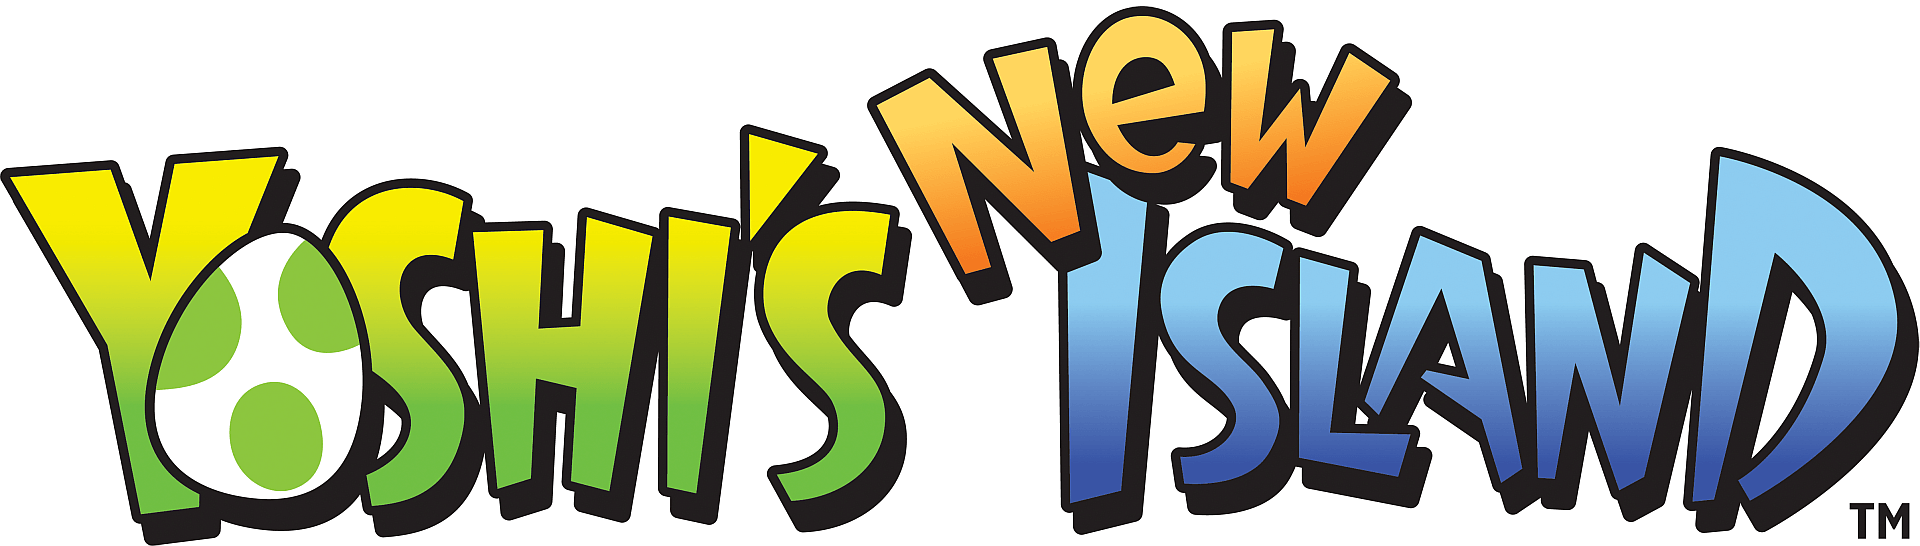 Yoshi Logo - Yoshi's New Island | Logos | Pinterest | Logos